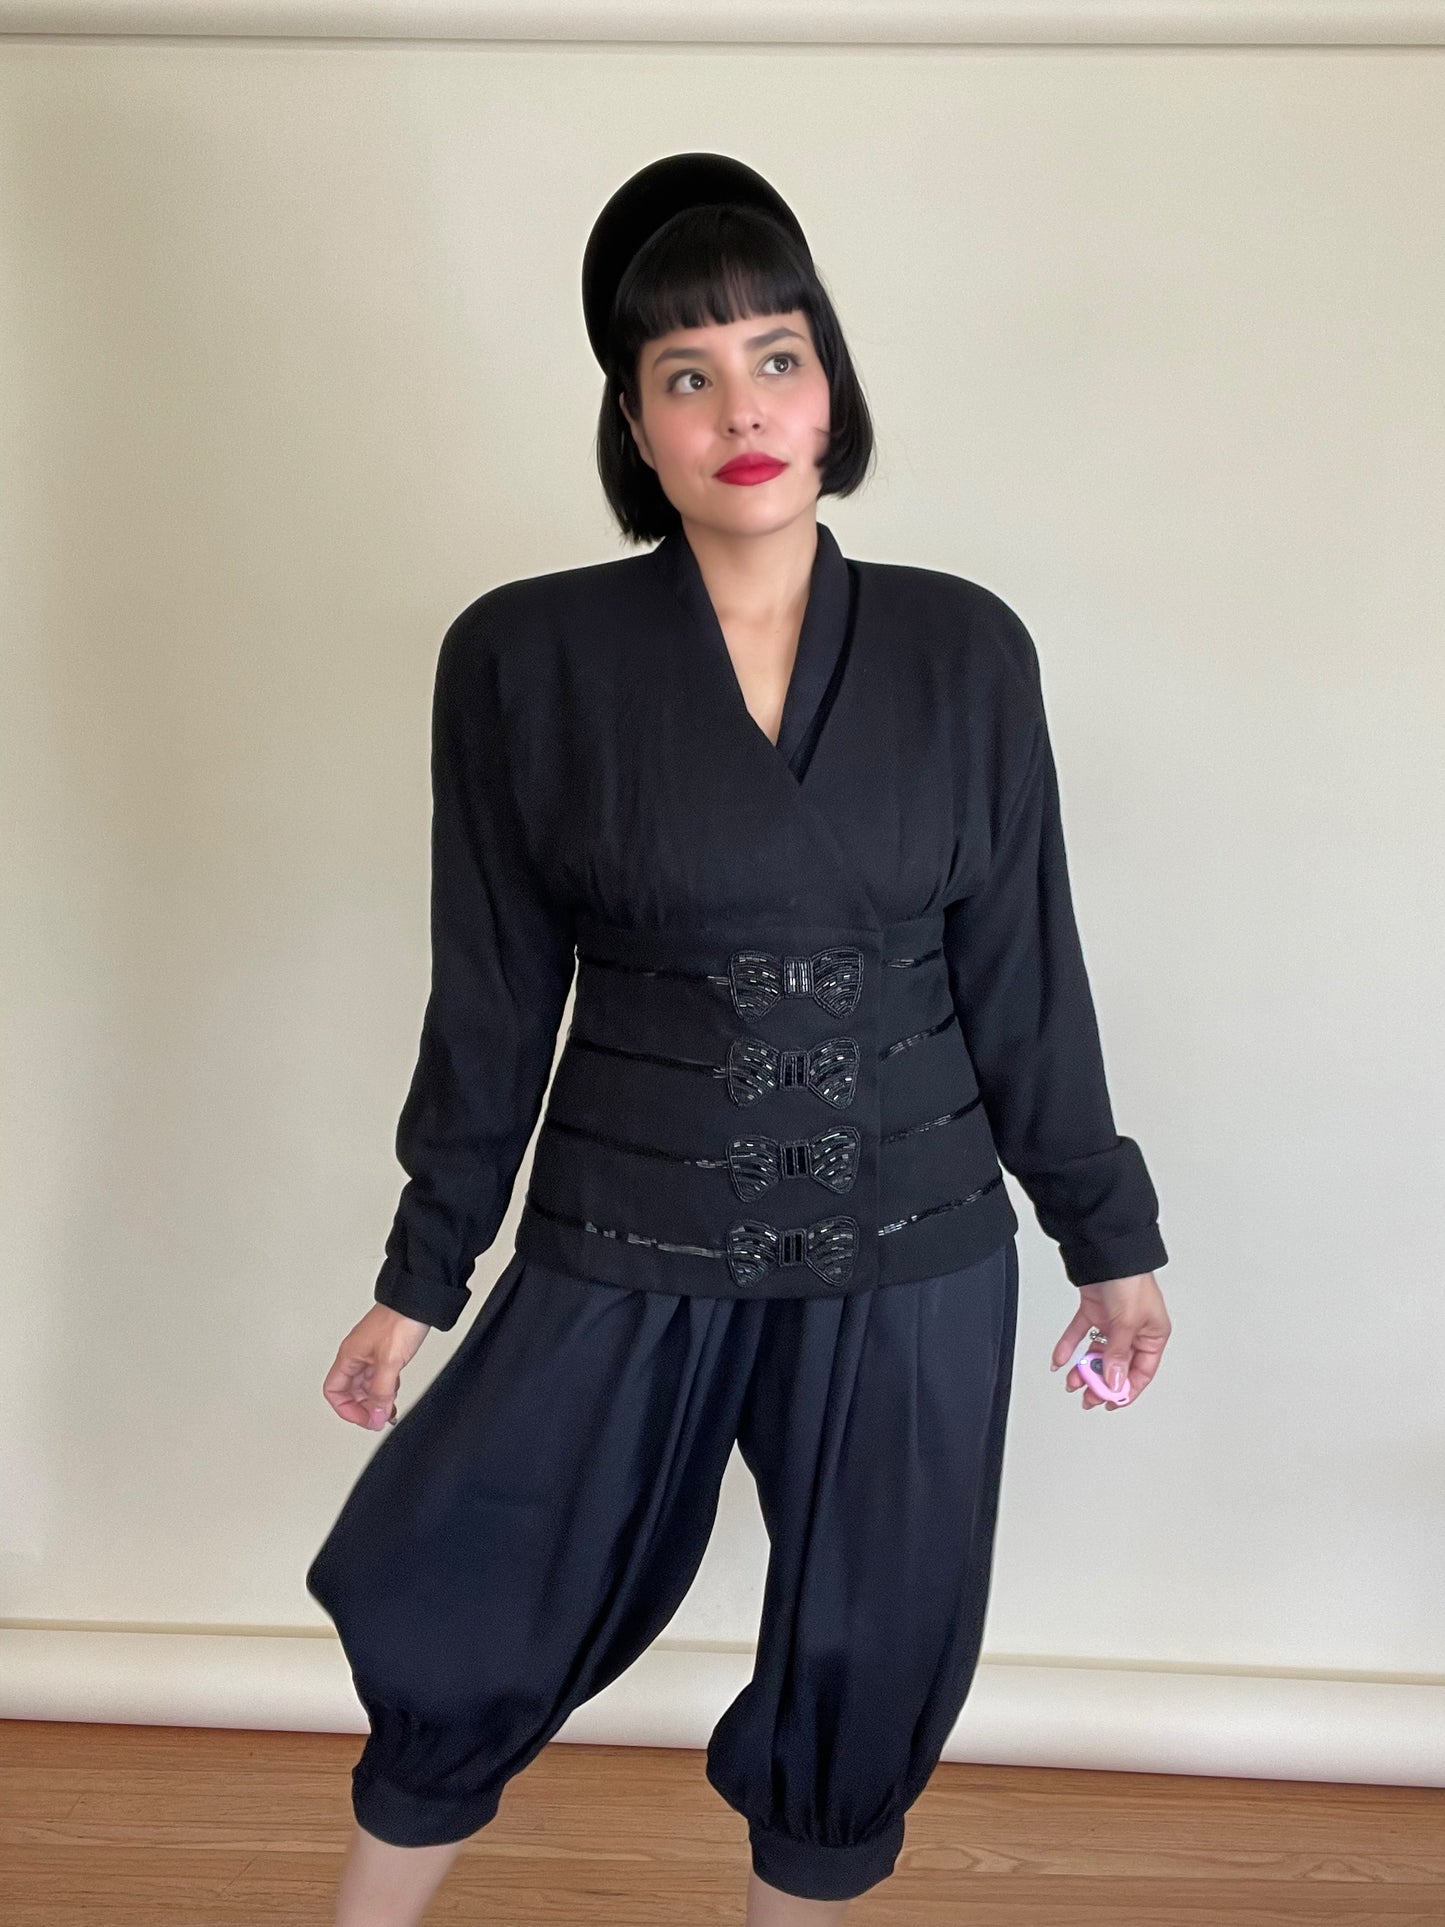 Vintage 80s "C'est Simone" Black Blazer Top with Beaded Bow Appliques Best Fits Sizes S-L